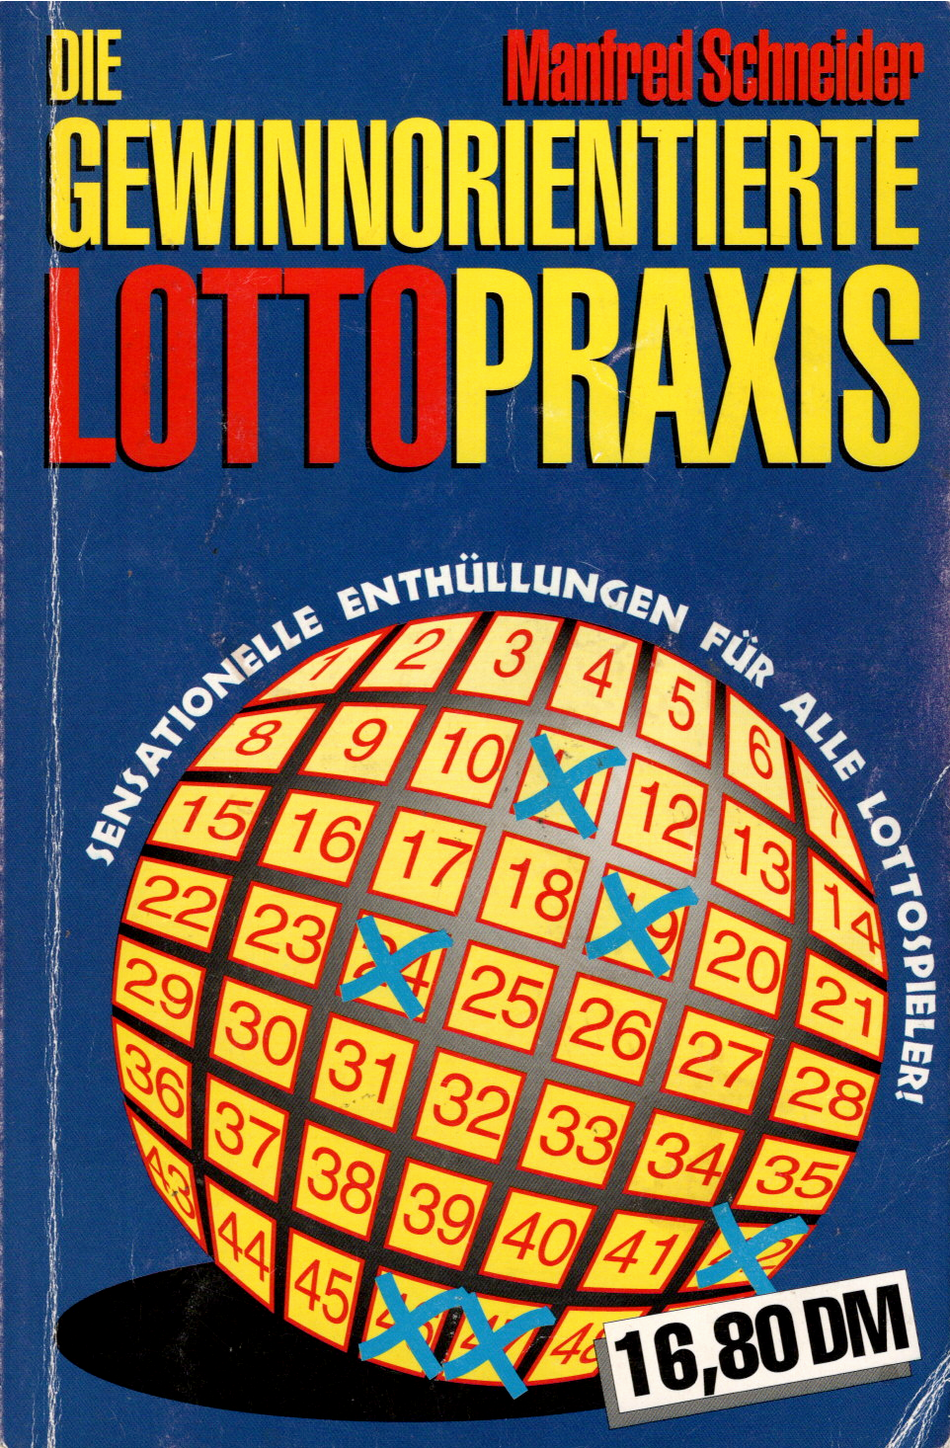 Titelbild vom Manfred Schneider Buch - Die gewinnorientierte Lottopraxis